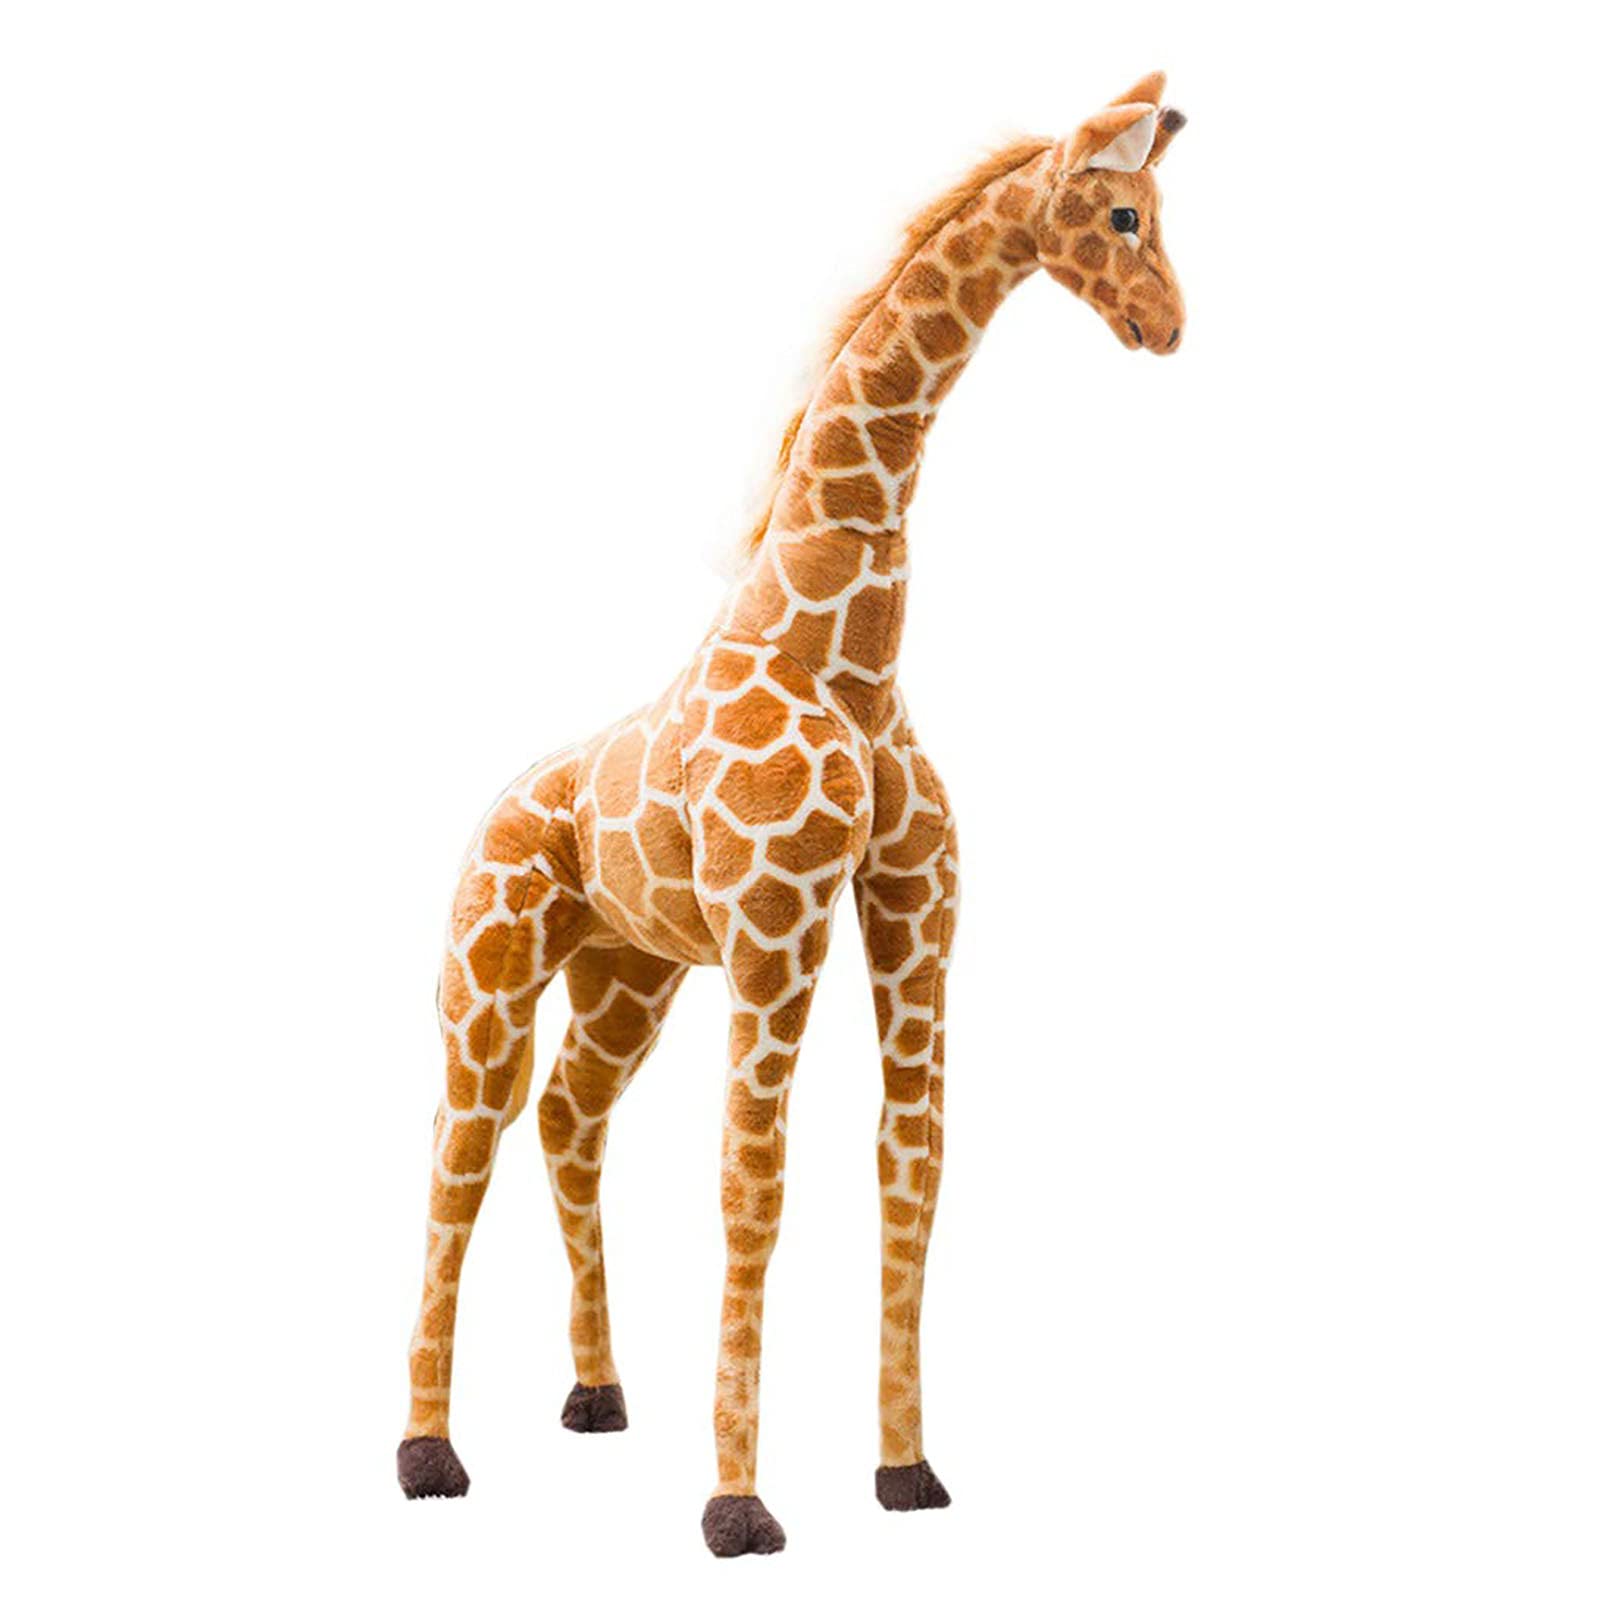 Hengqiyuan Riesen Giraffe Kuscheltier Groß Plüschtier XXL, Schön Kuscheltier Plüsch Stofftier Giraffe Spielzeug Junge Mädchen Geburtstagsgeschenk,140cm